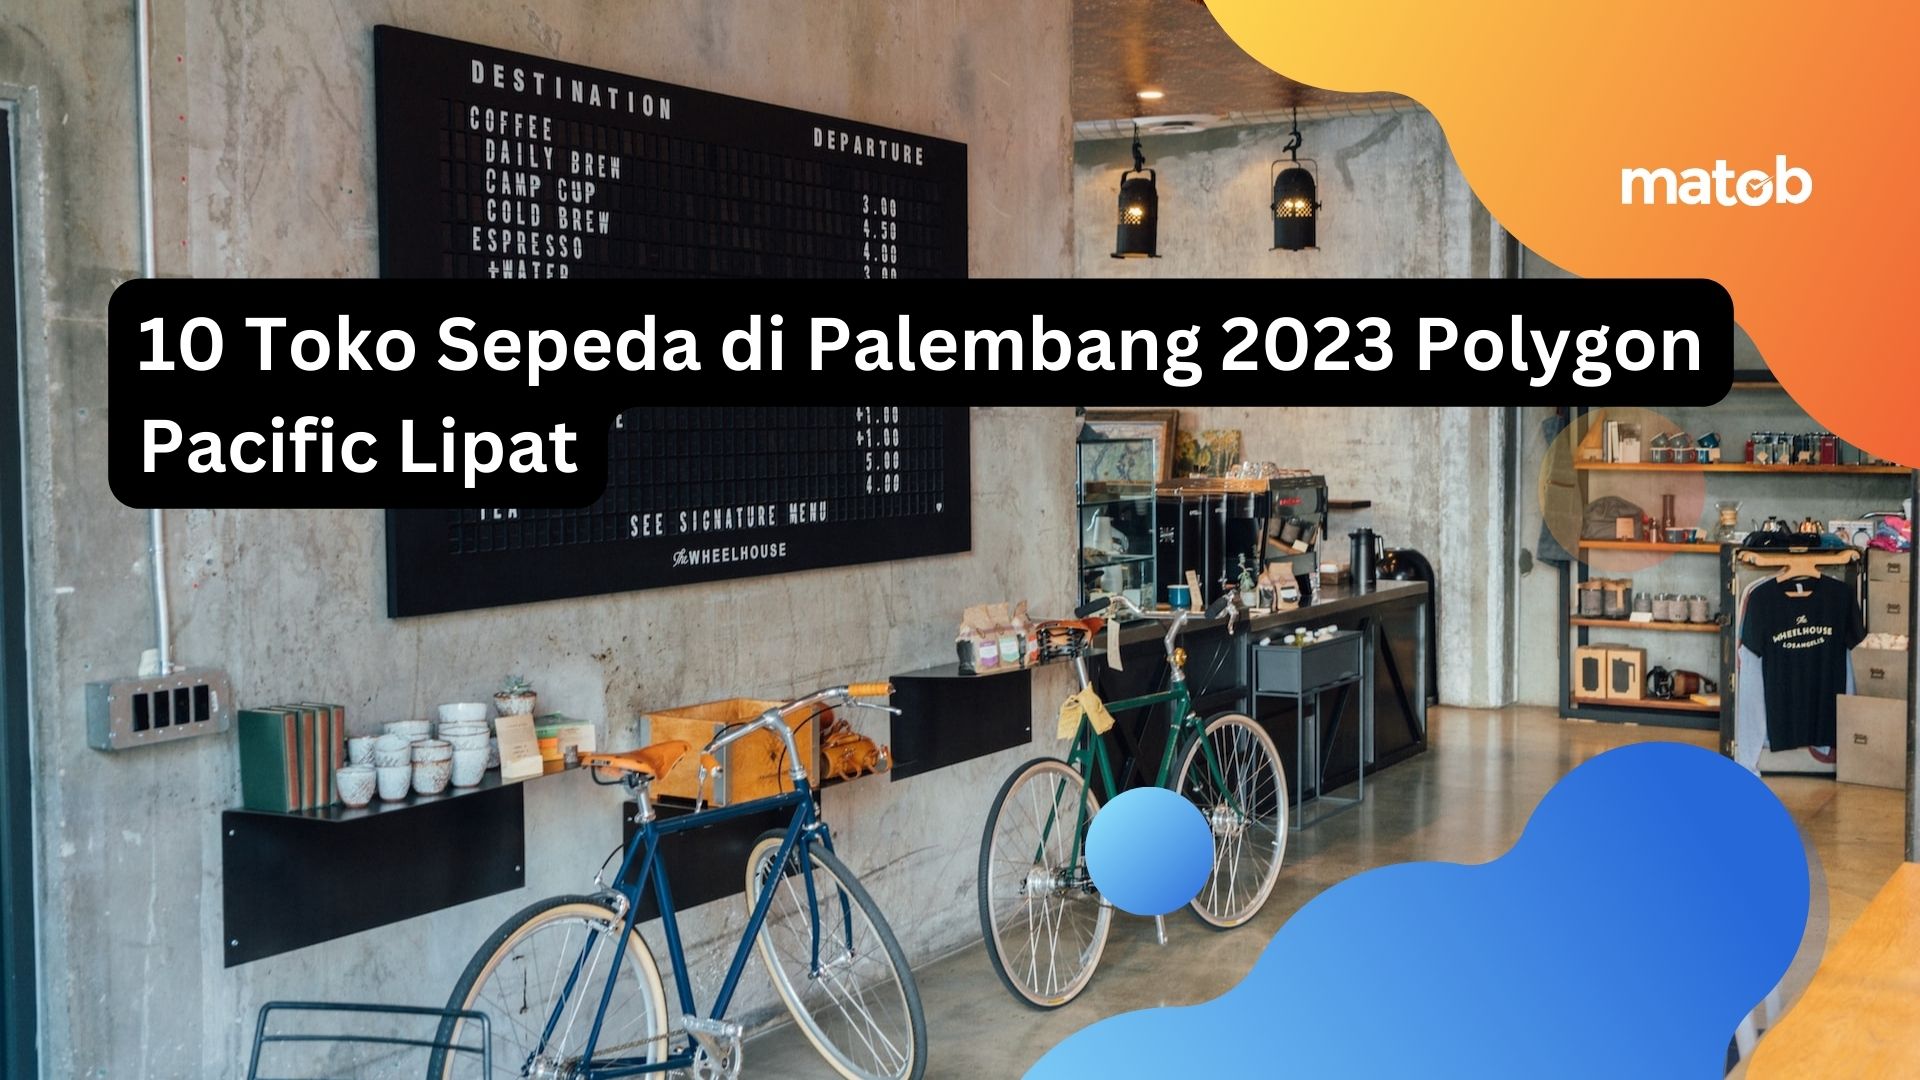 10 Toko Sepeda di Palembang 2023 Polygon Pacific Lipat